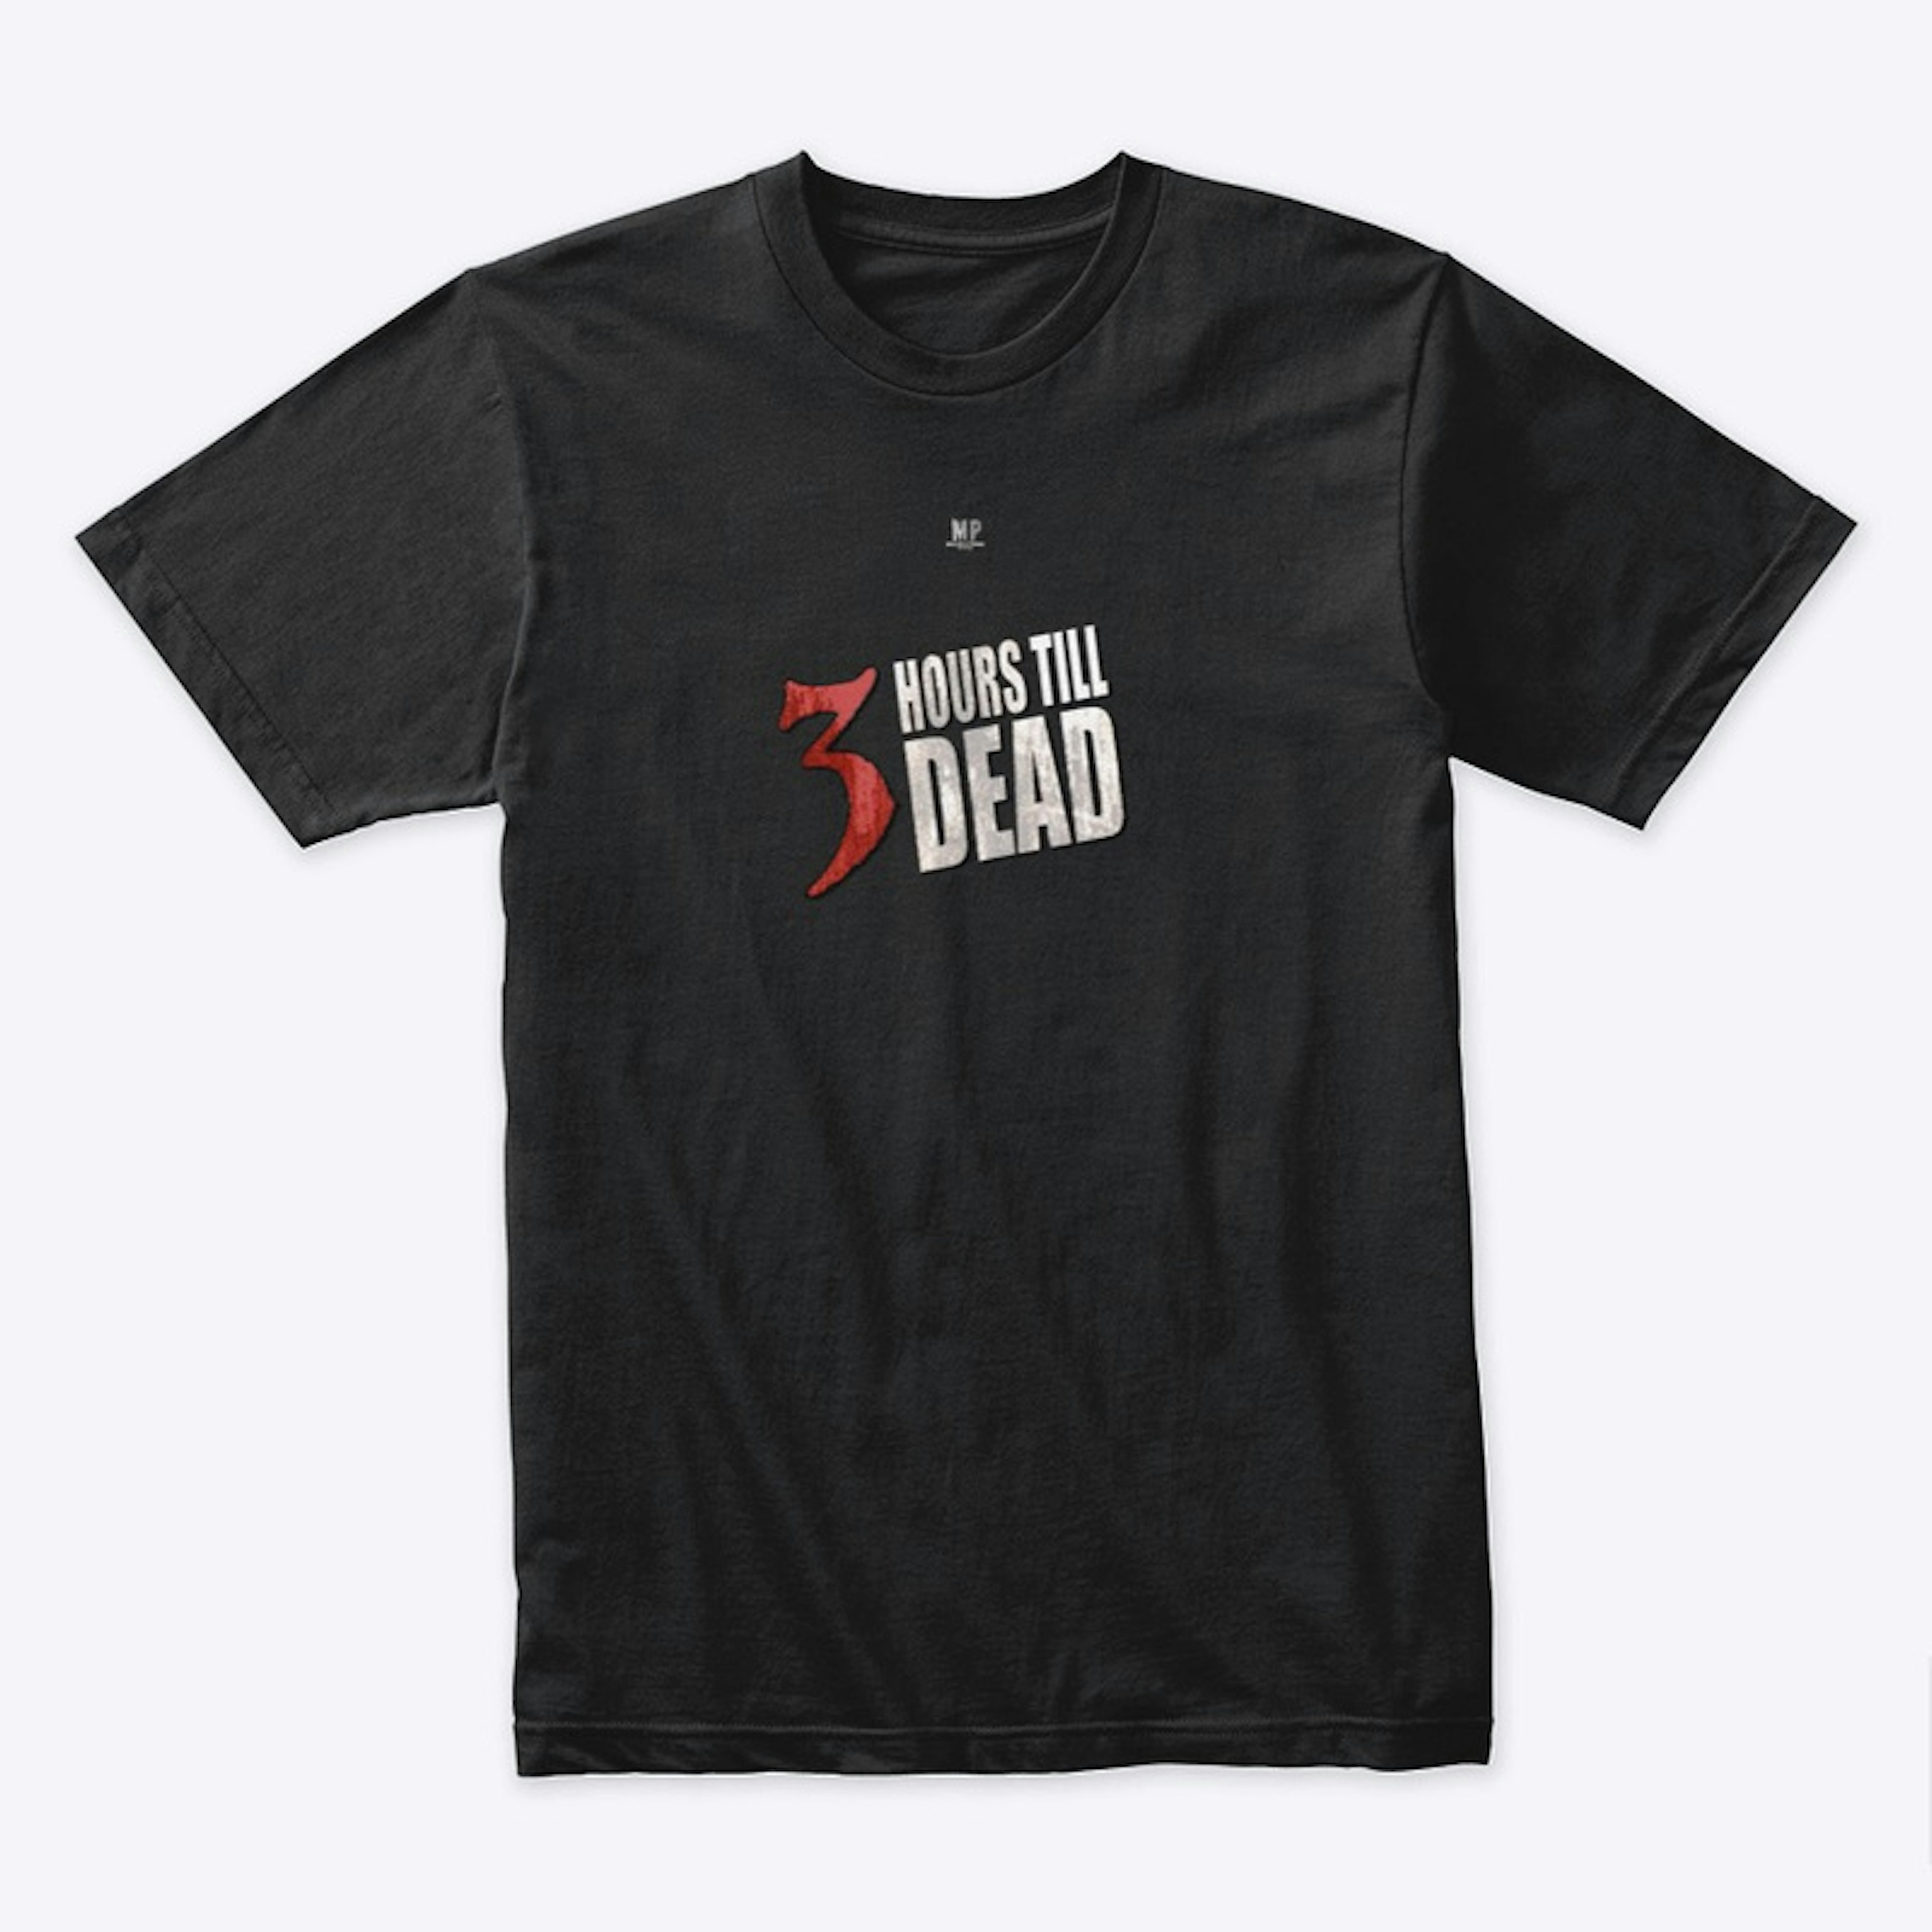 3 Hours Till Dead T-shirt